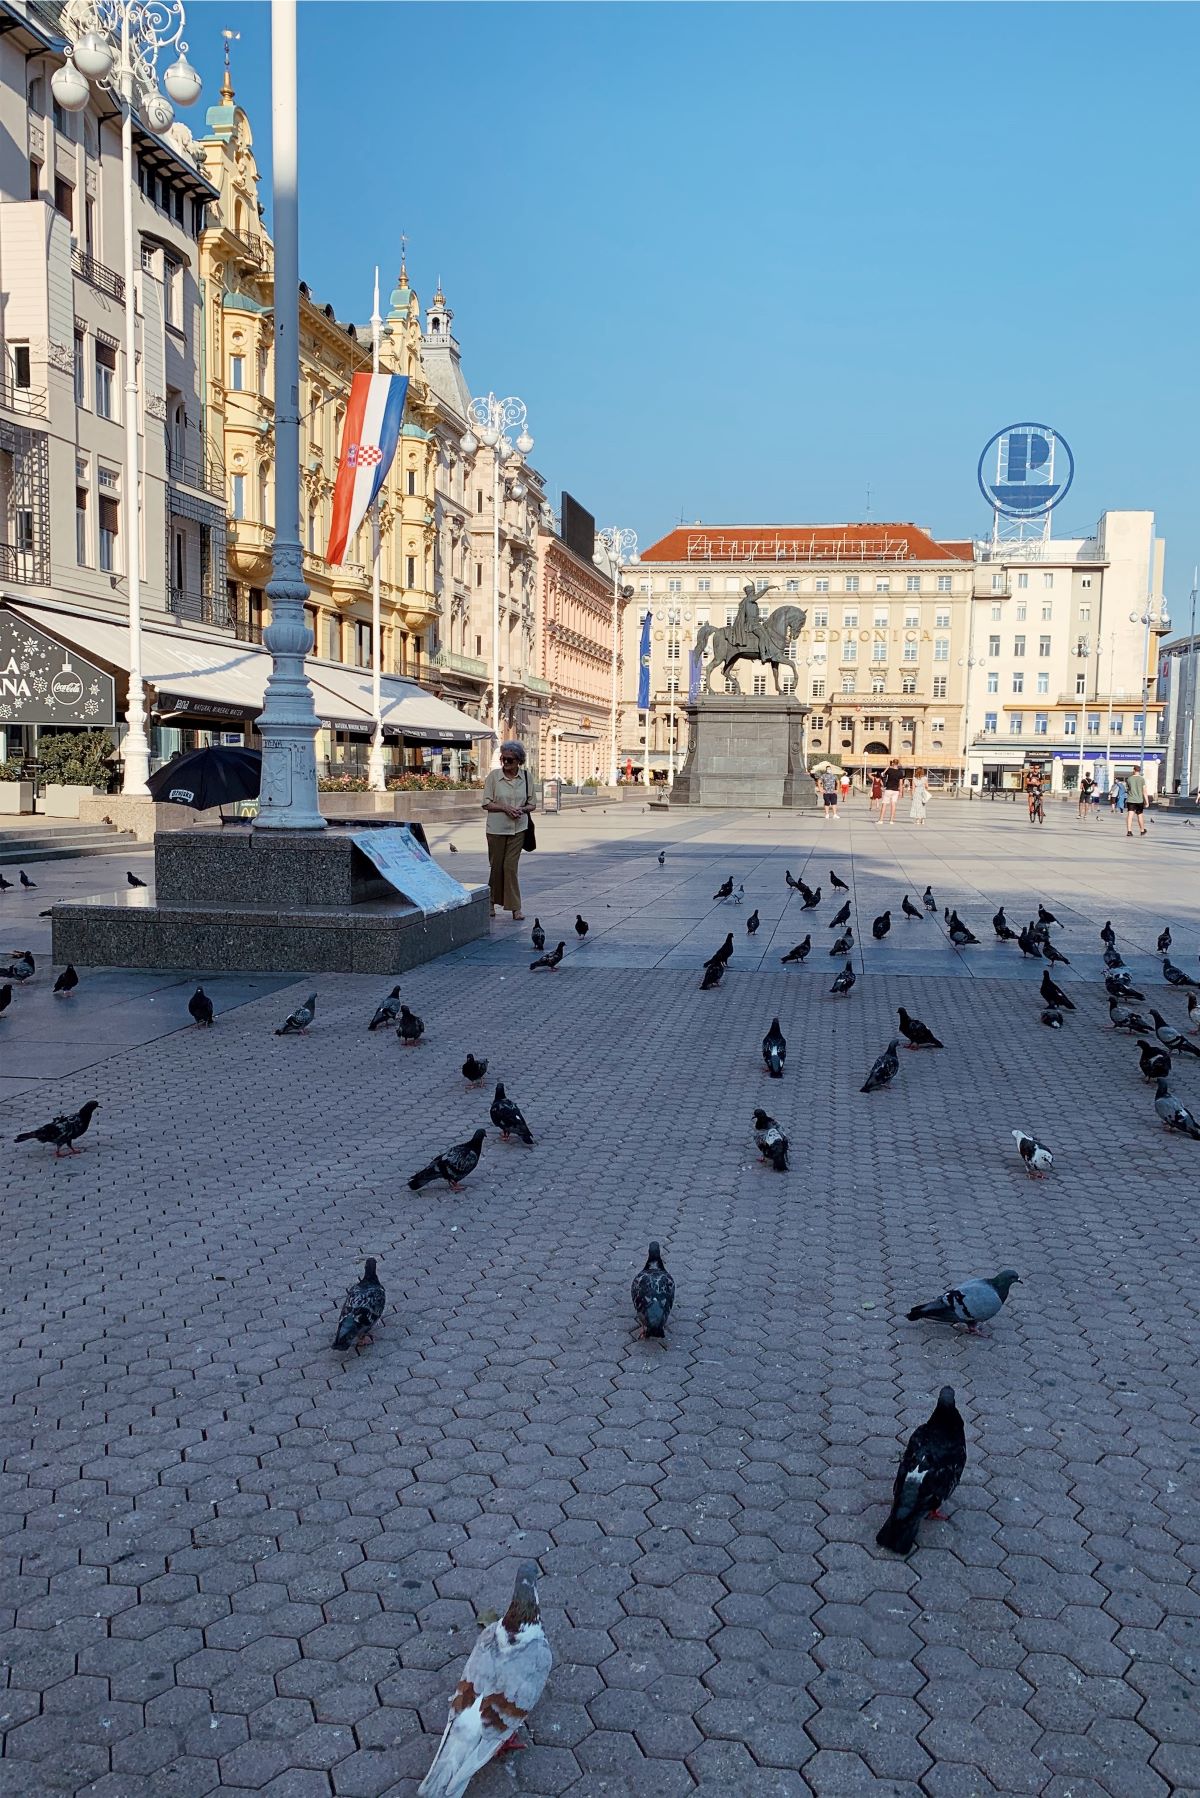 Zegreb, Croatia Town Square